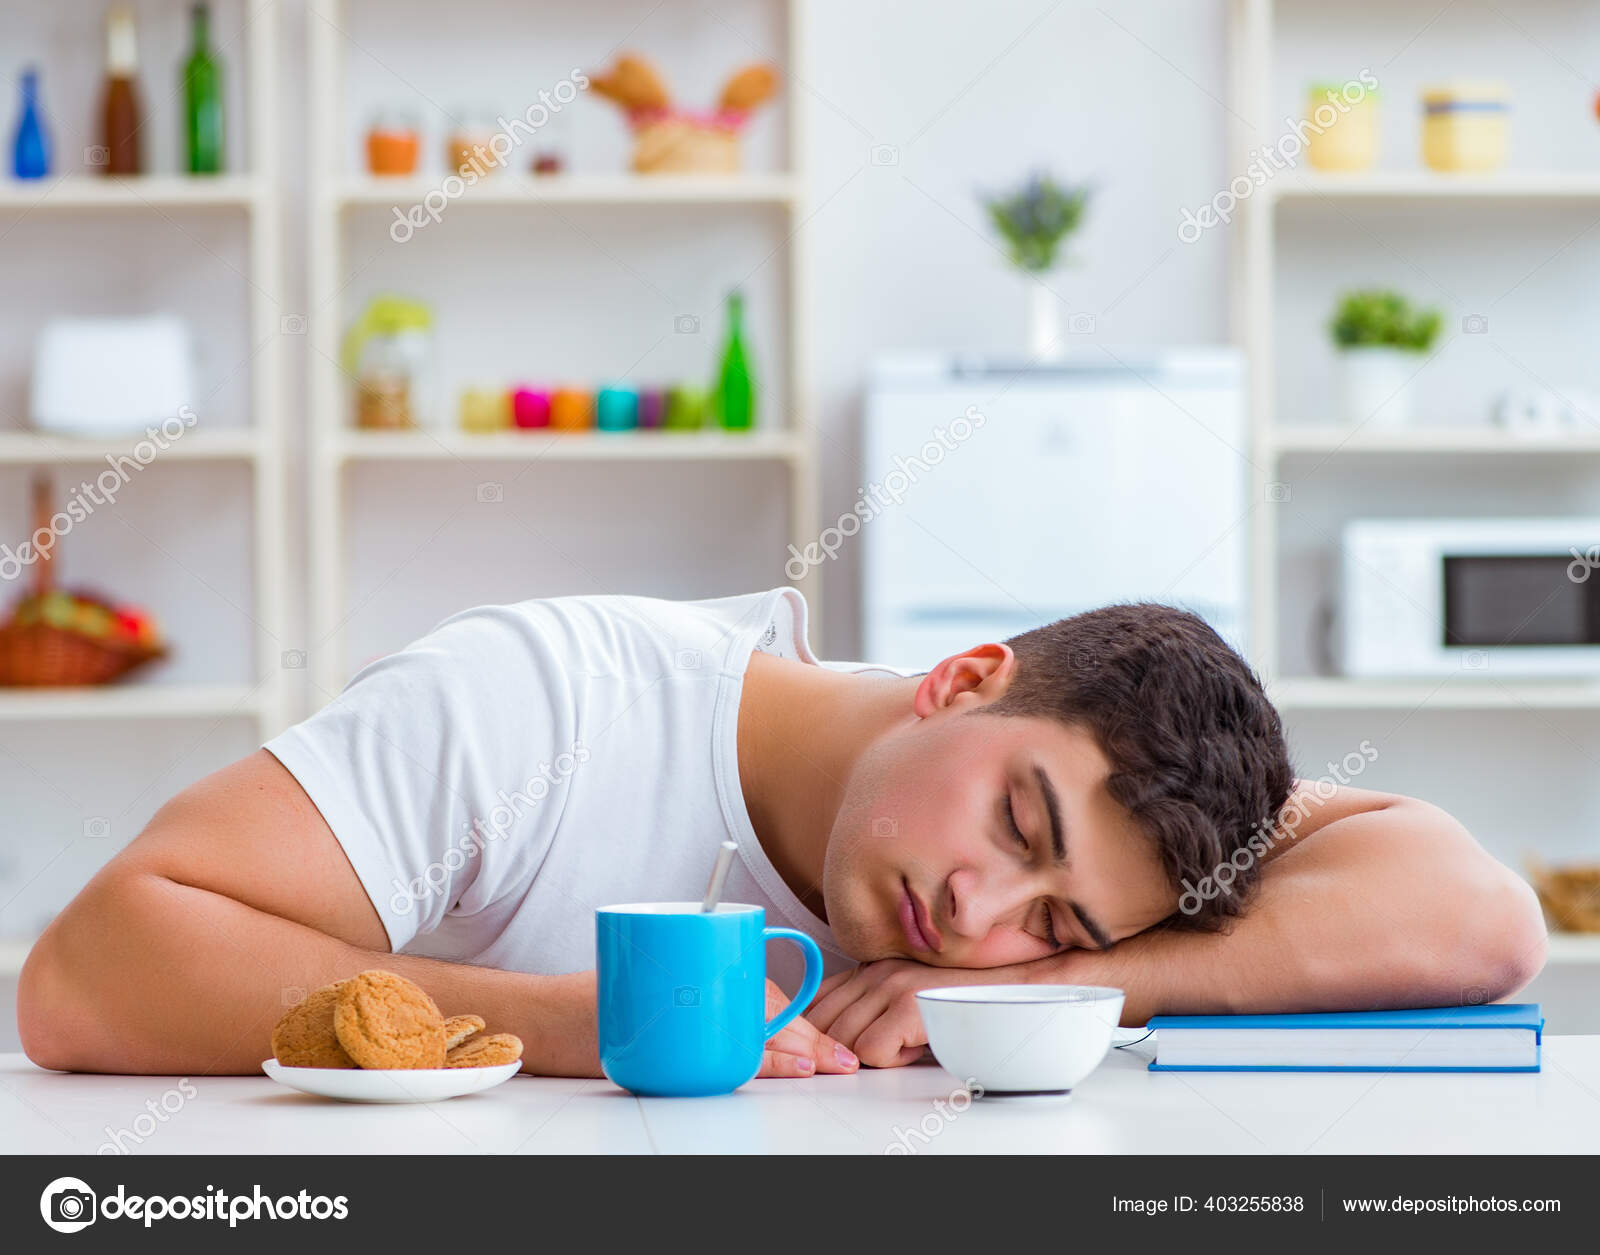 Спать после завтрака. Сон после завтрака. Фото людей спящих за завтраком. Man sleeping after eating.